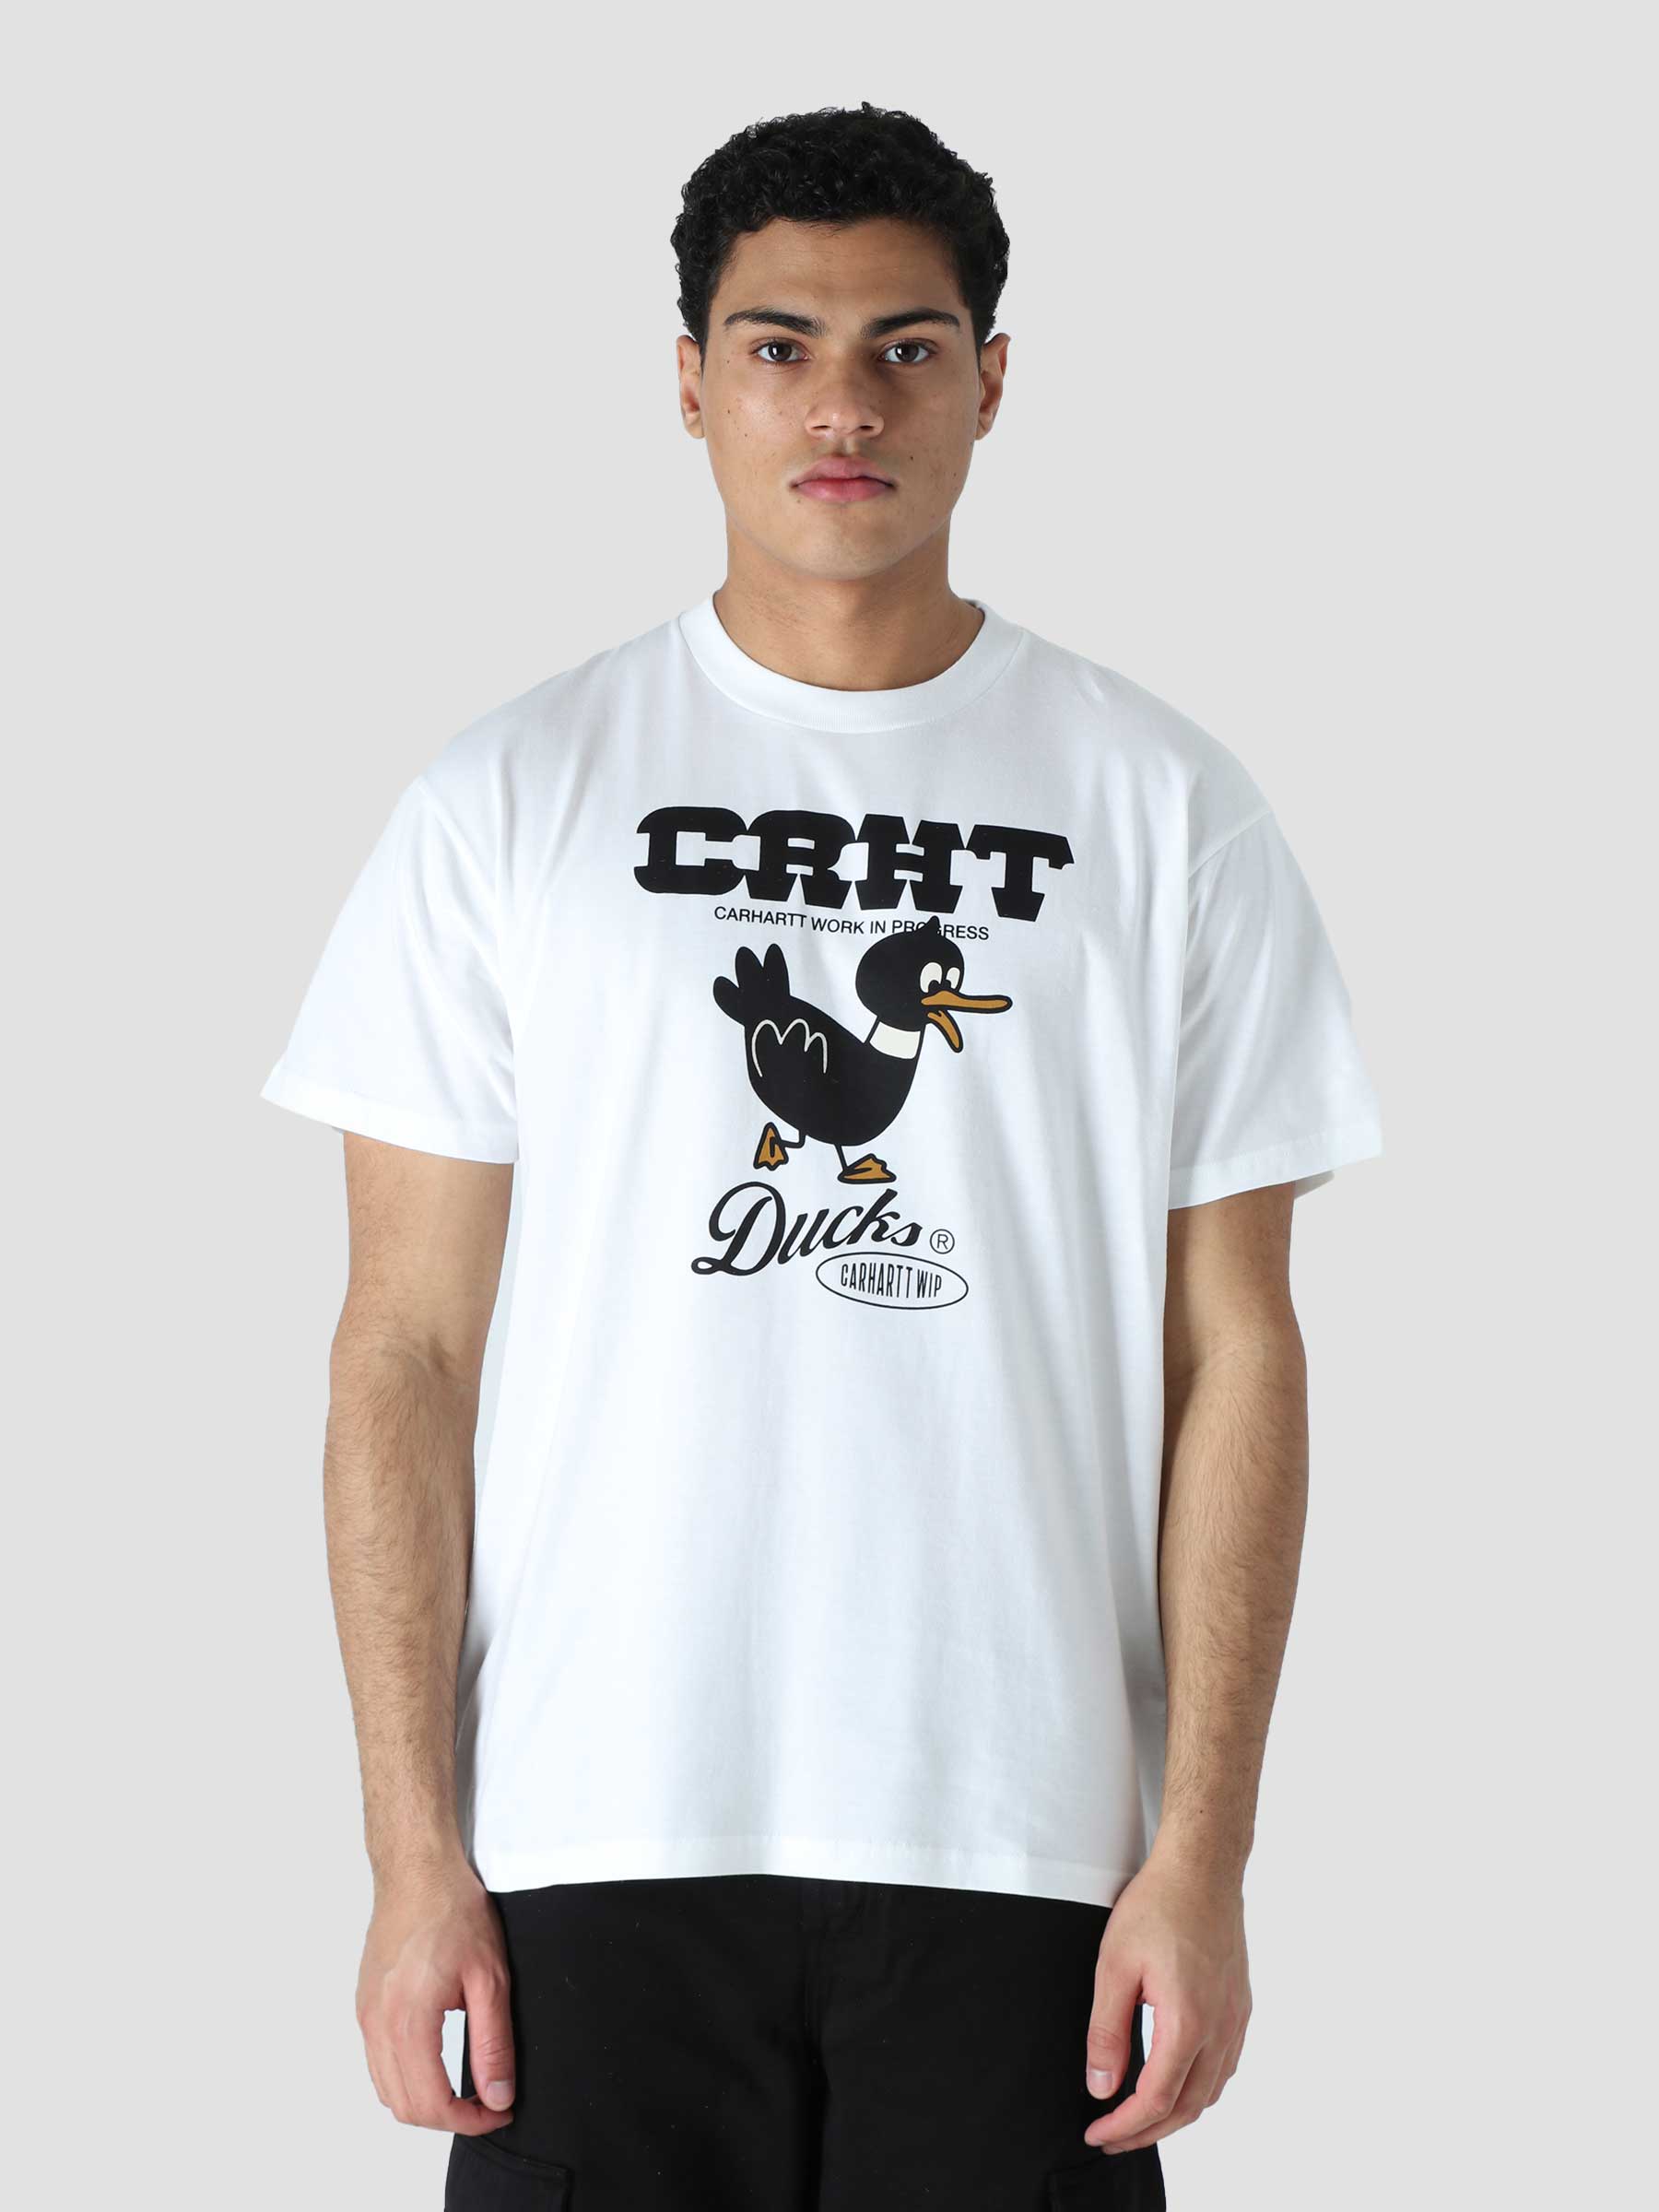 S/S Crht Ducks T-Shirt White I030207-02XX